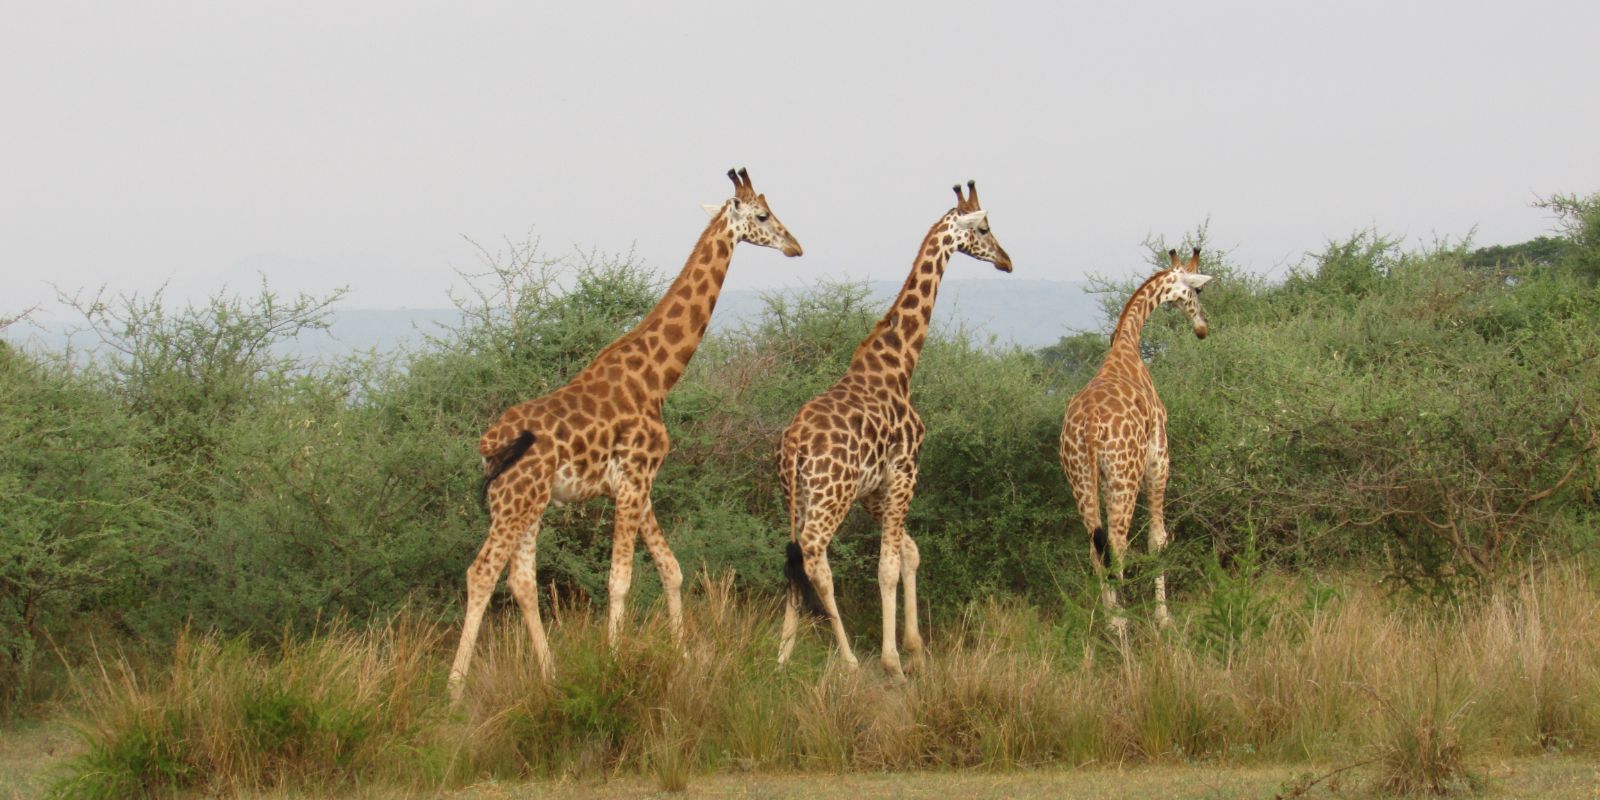 giraffes walking on a grass field in Uganda